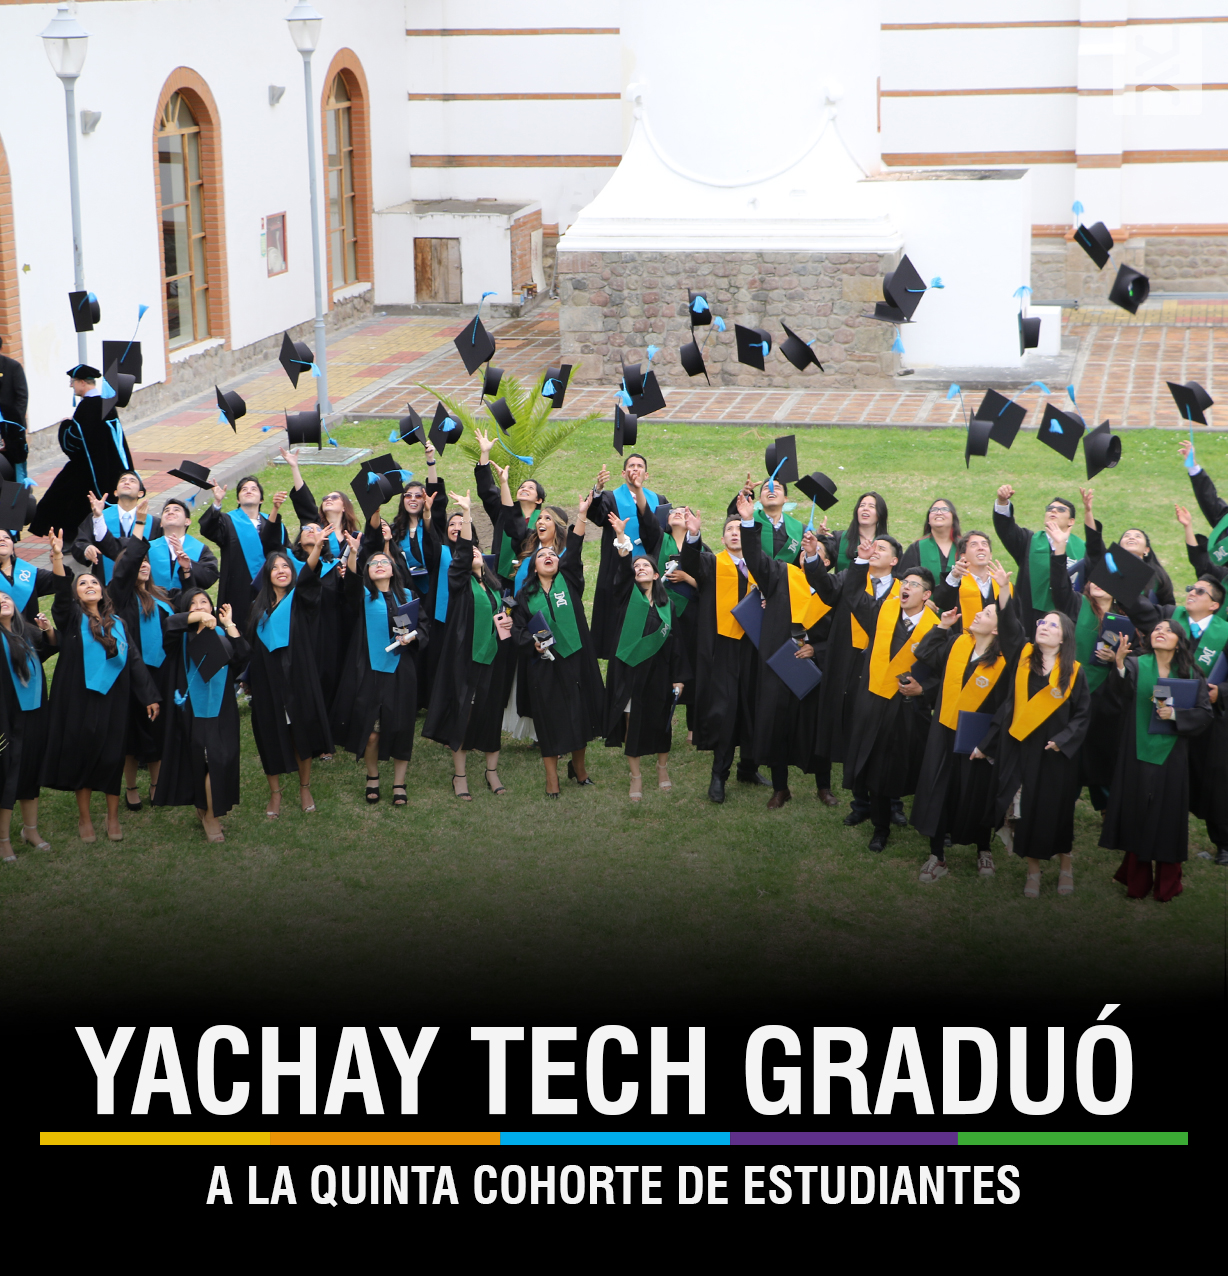 YACHAY TECH GRADUÓ A LA QUINTA COHORTE DE ESTUDIANTES